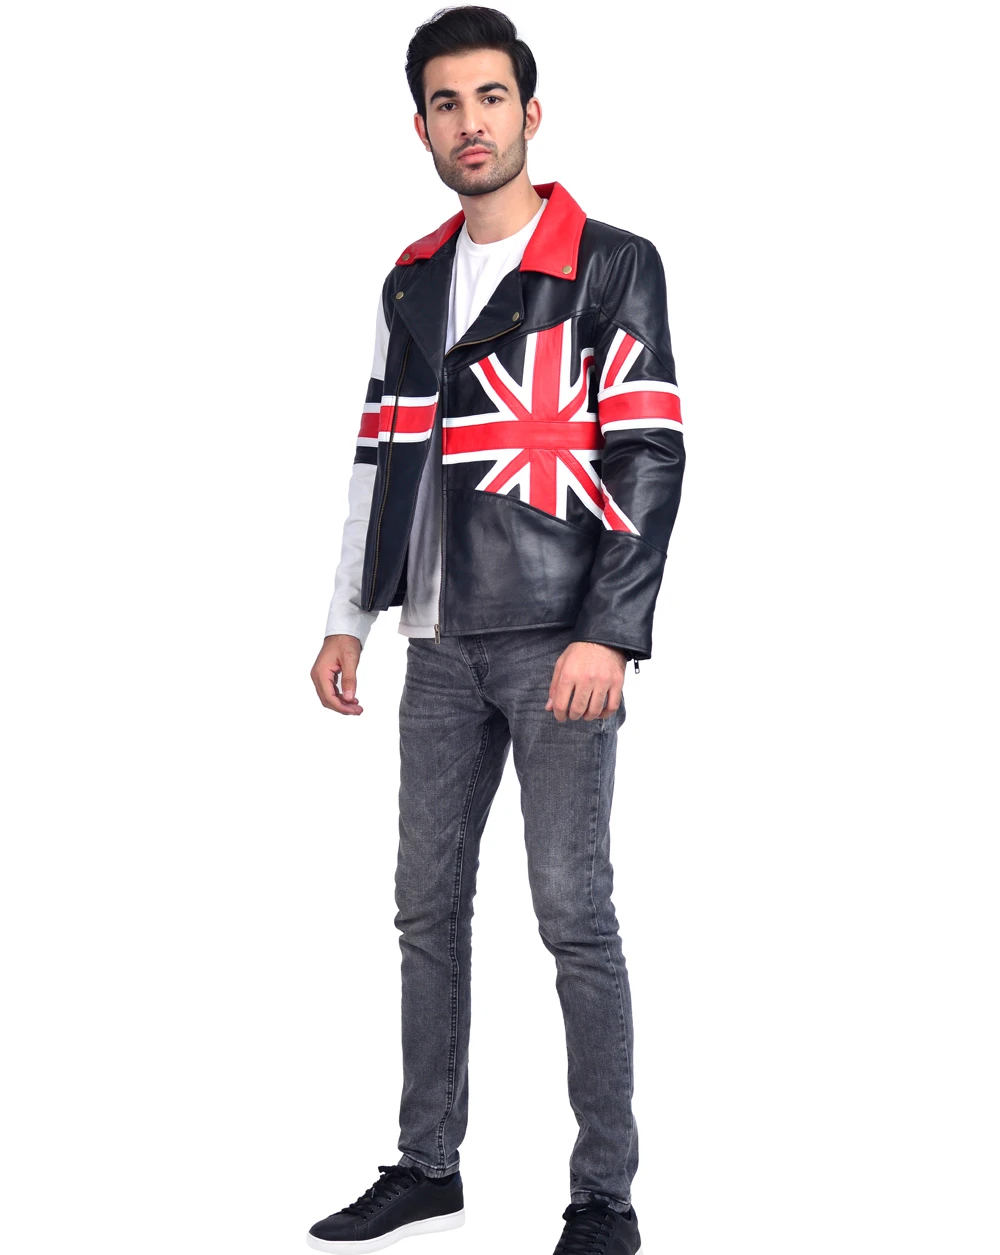 Union Jacket British Biker Leather Jacket